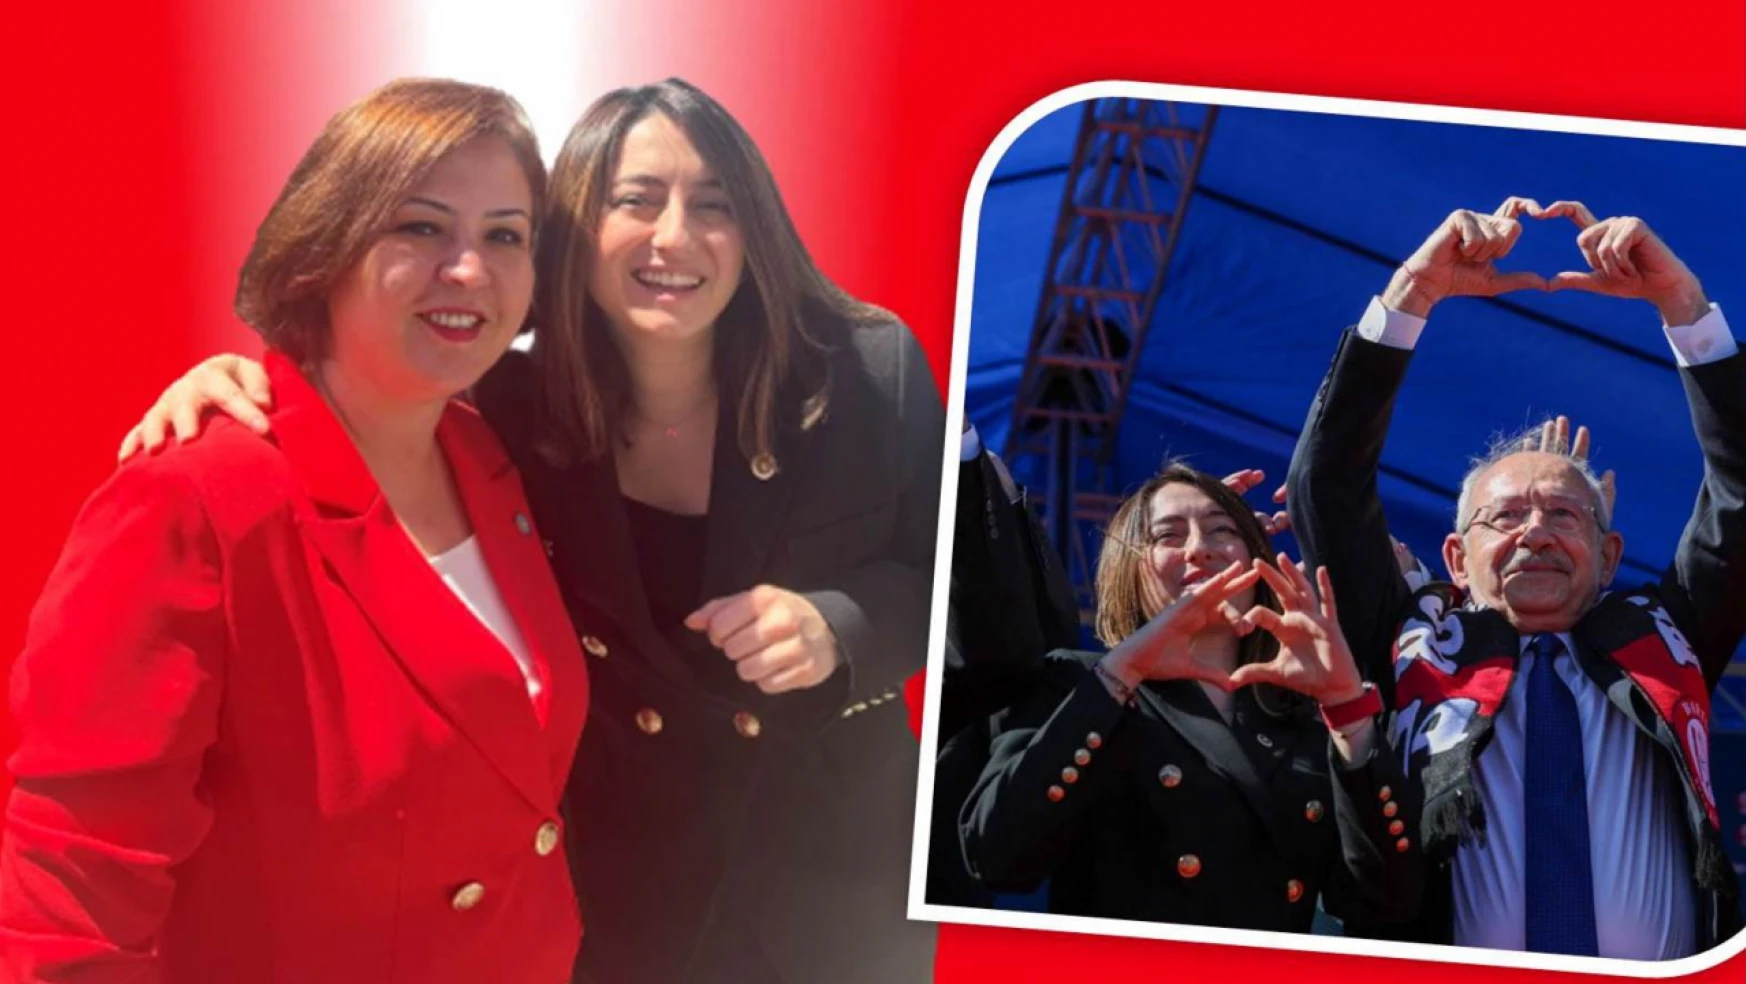 Bankoğlu, Bartın 2 kadınla mecliste temsil edilen ilk şehir olacak